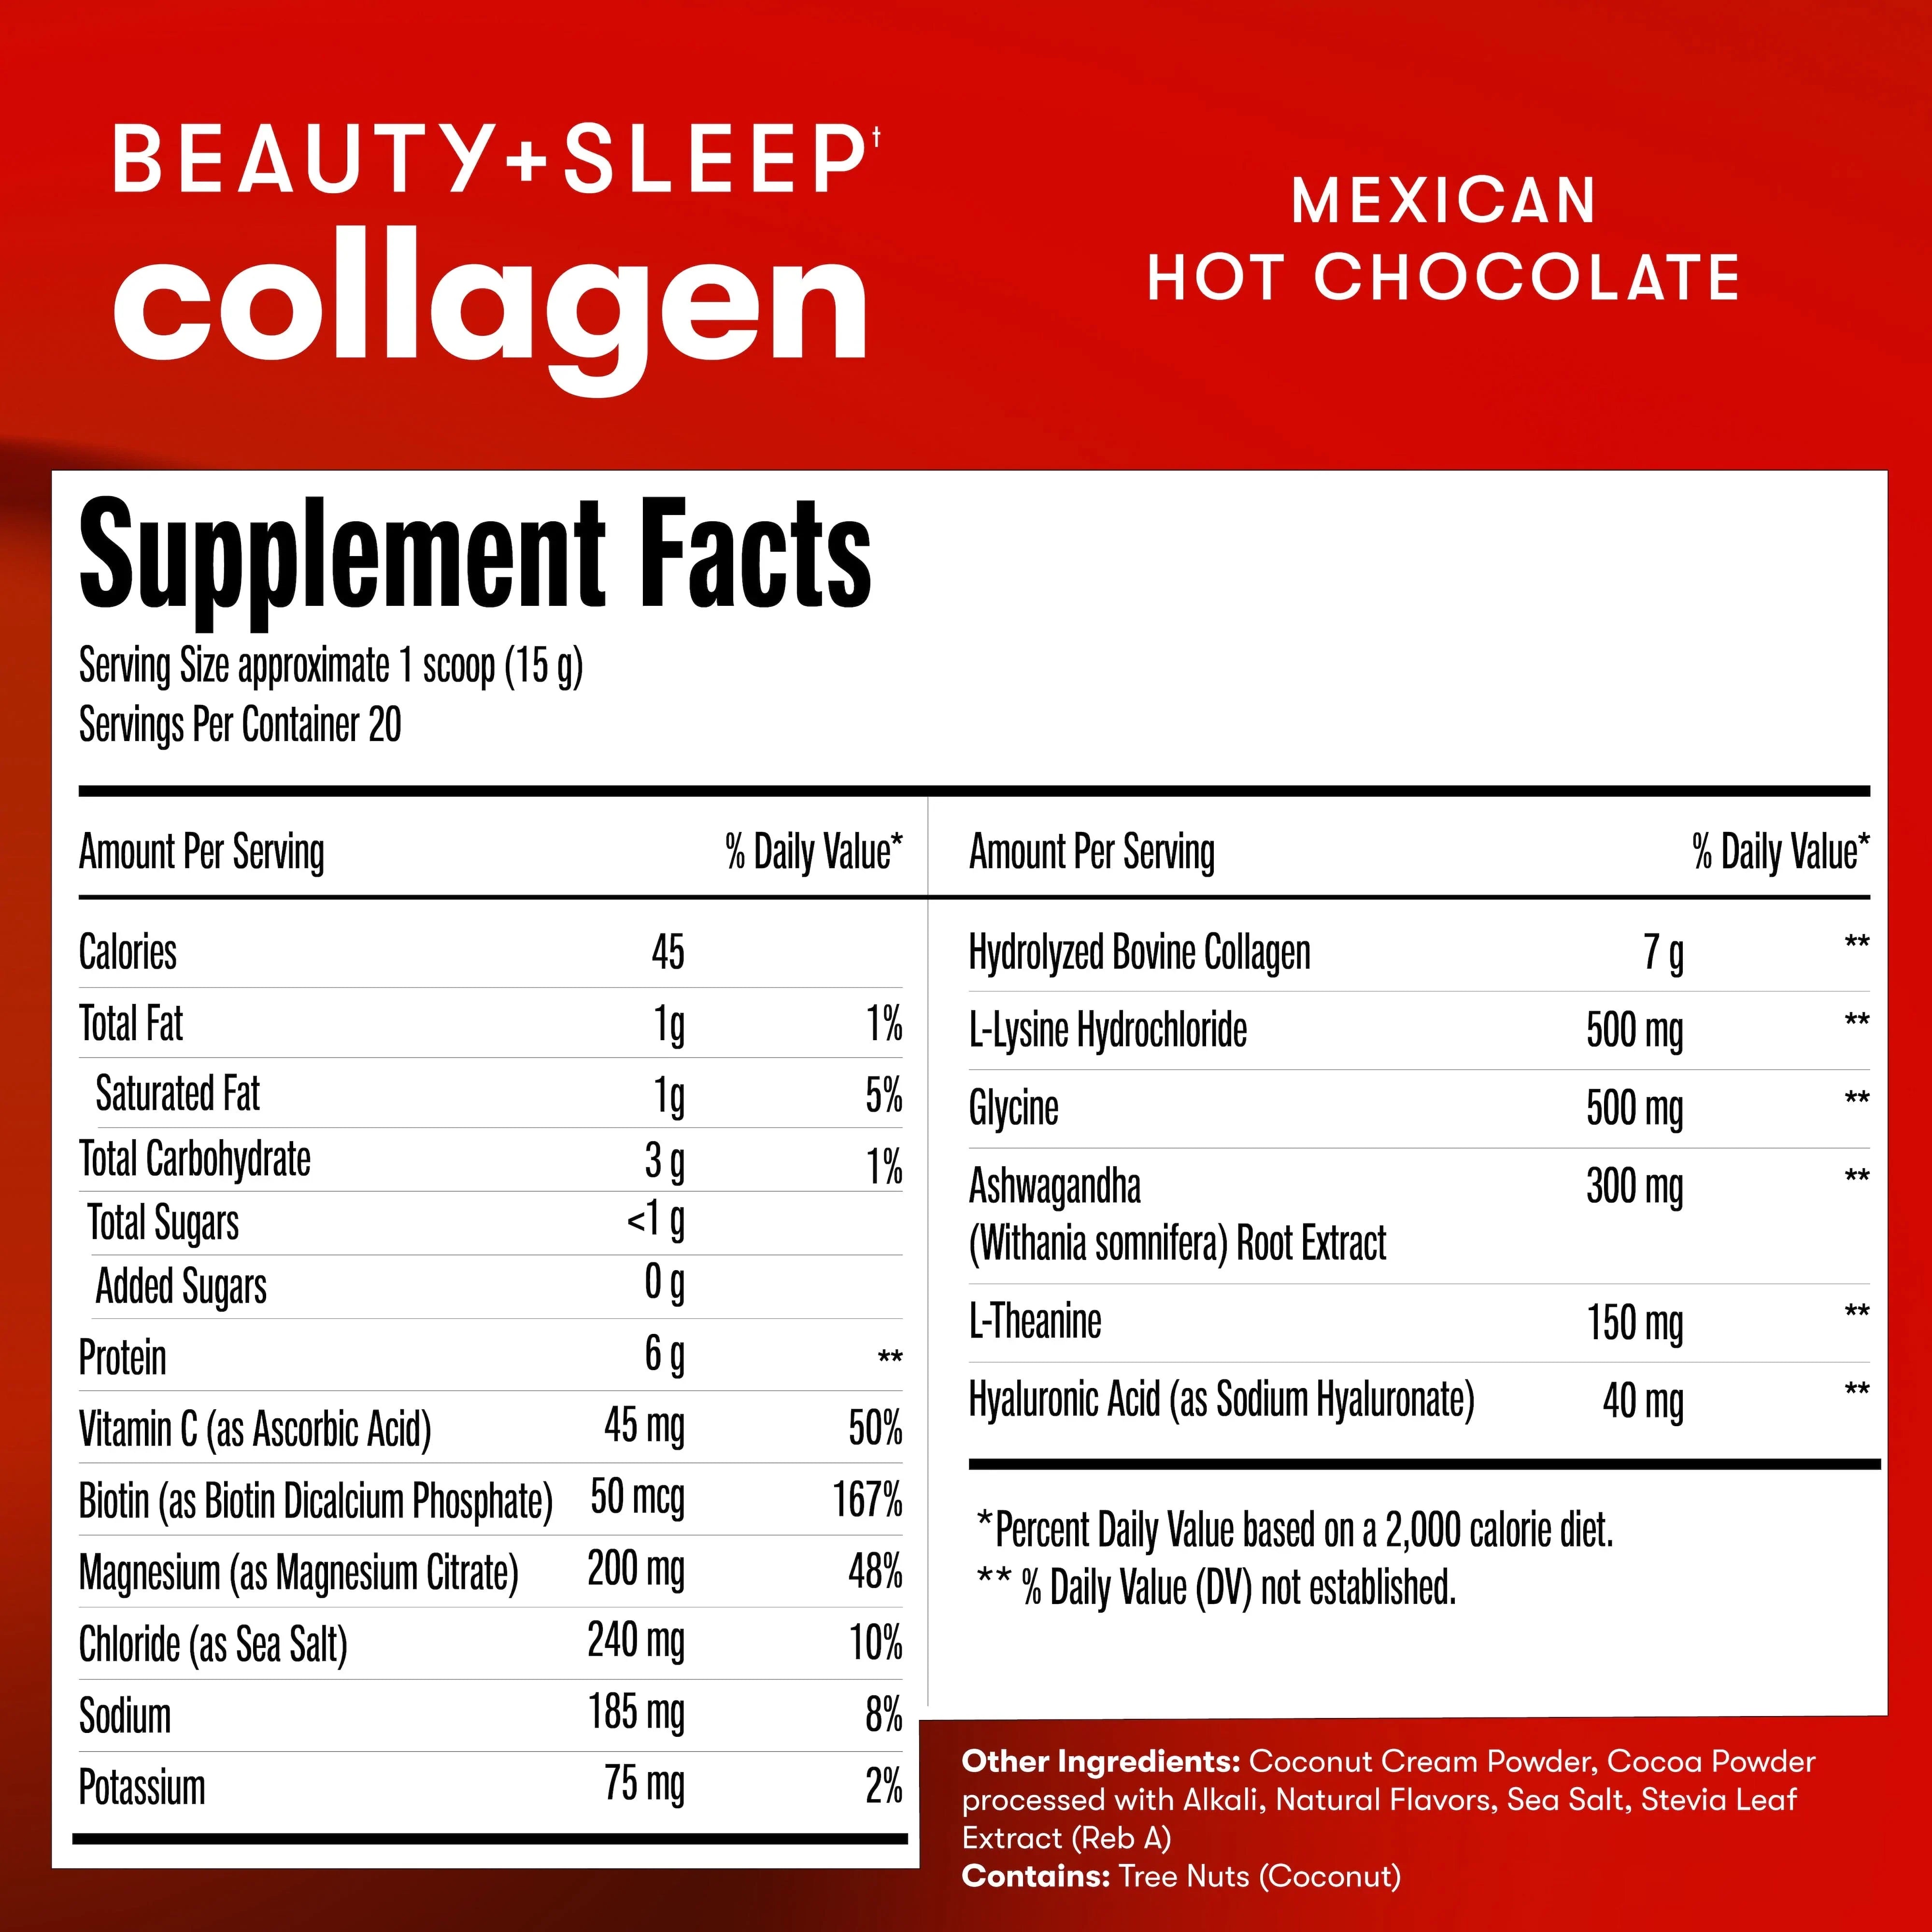 Beauty + Sleep Collagen • Complete